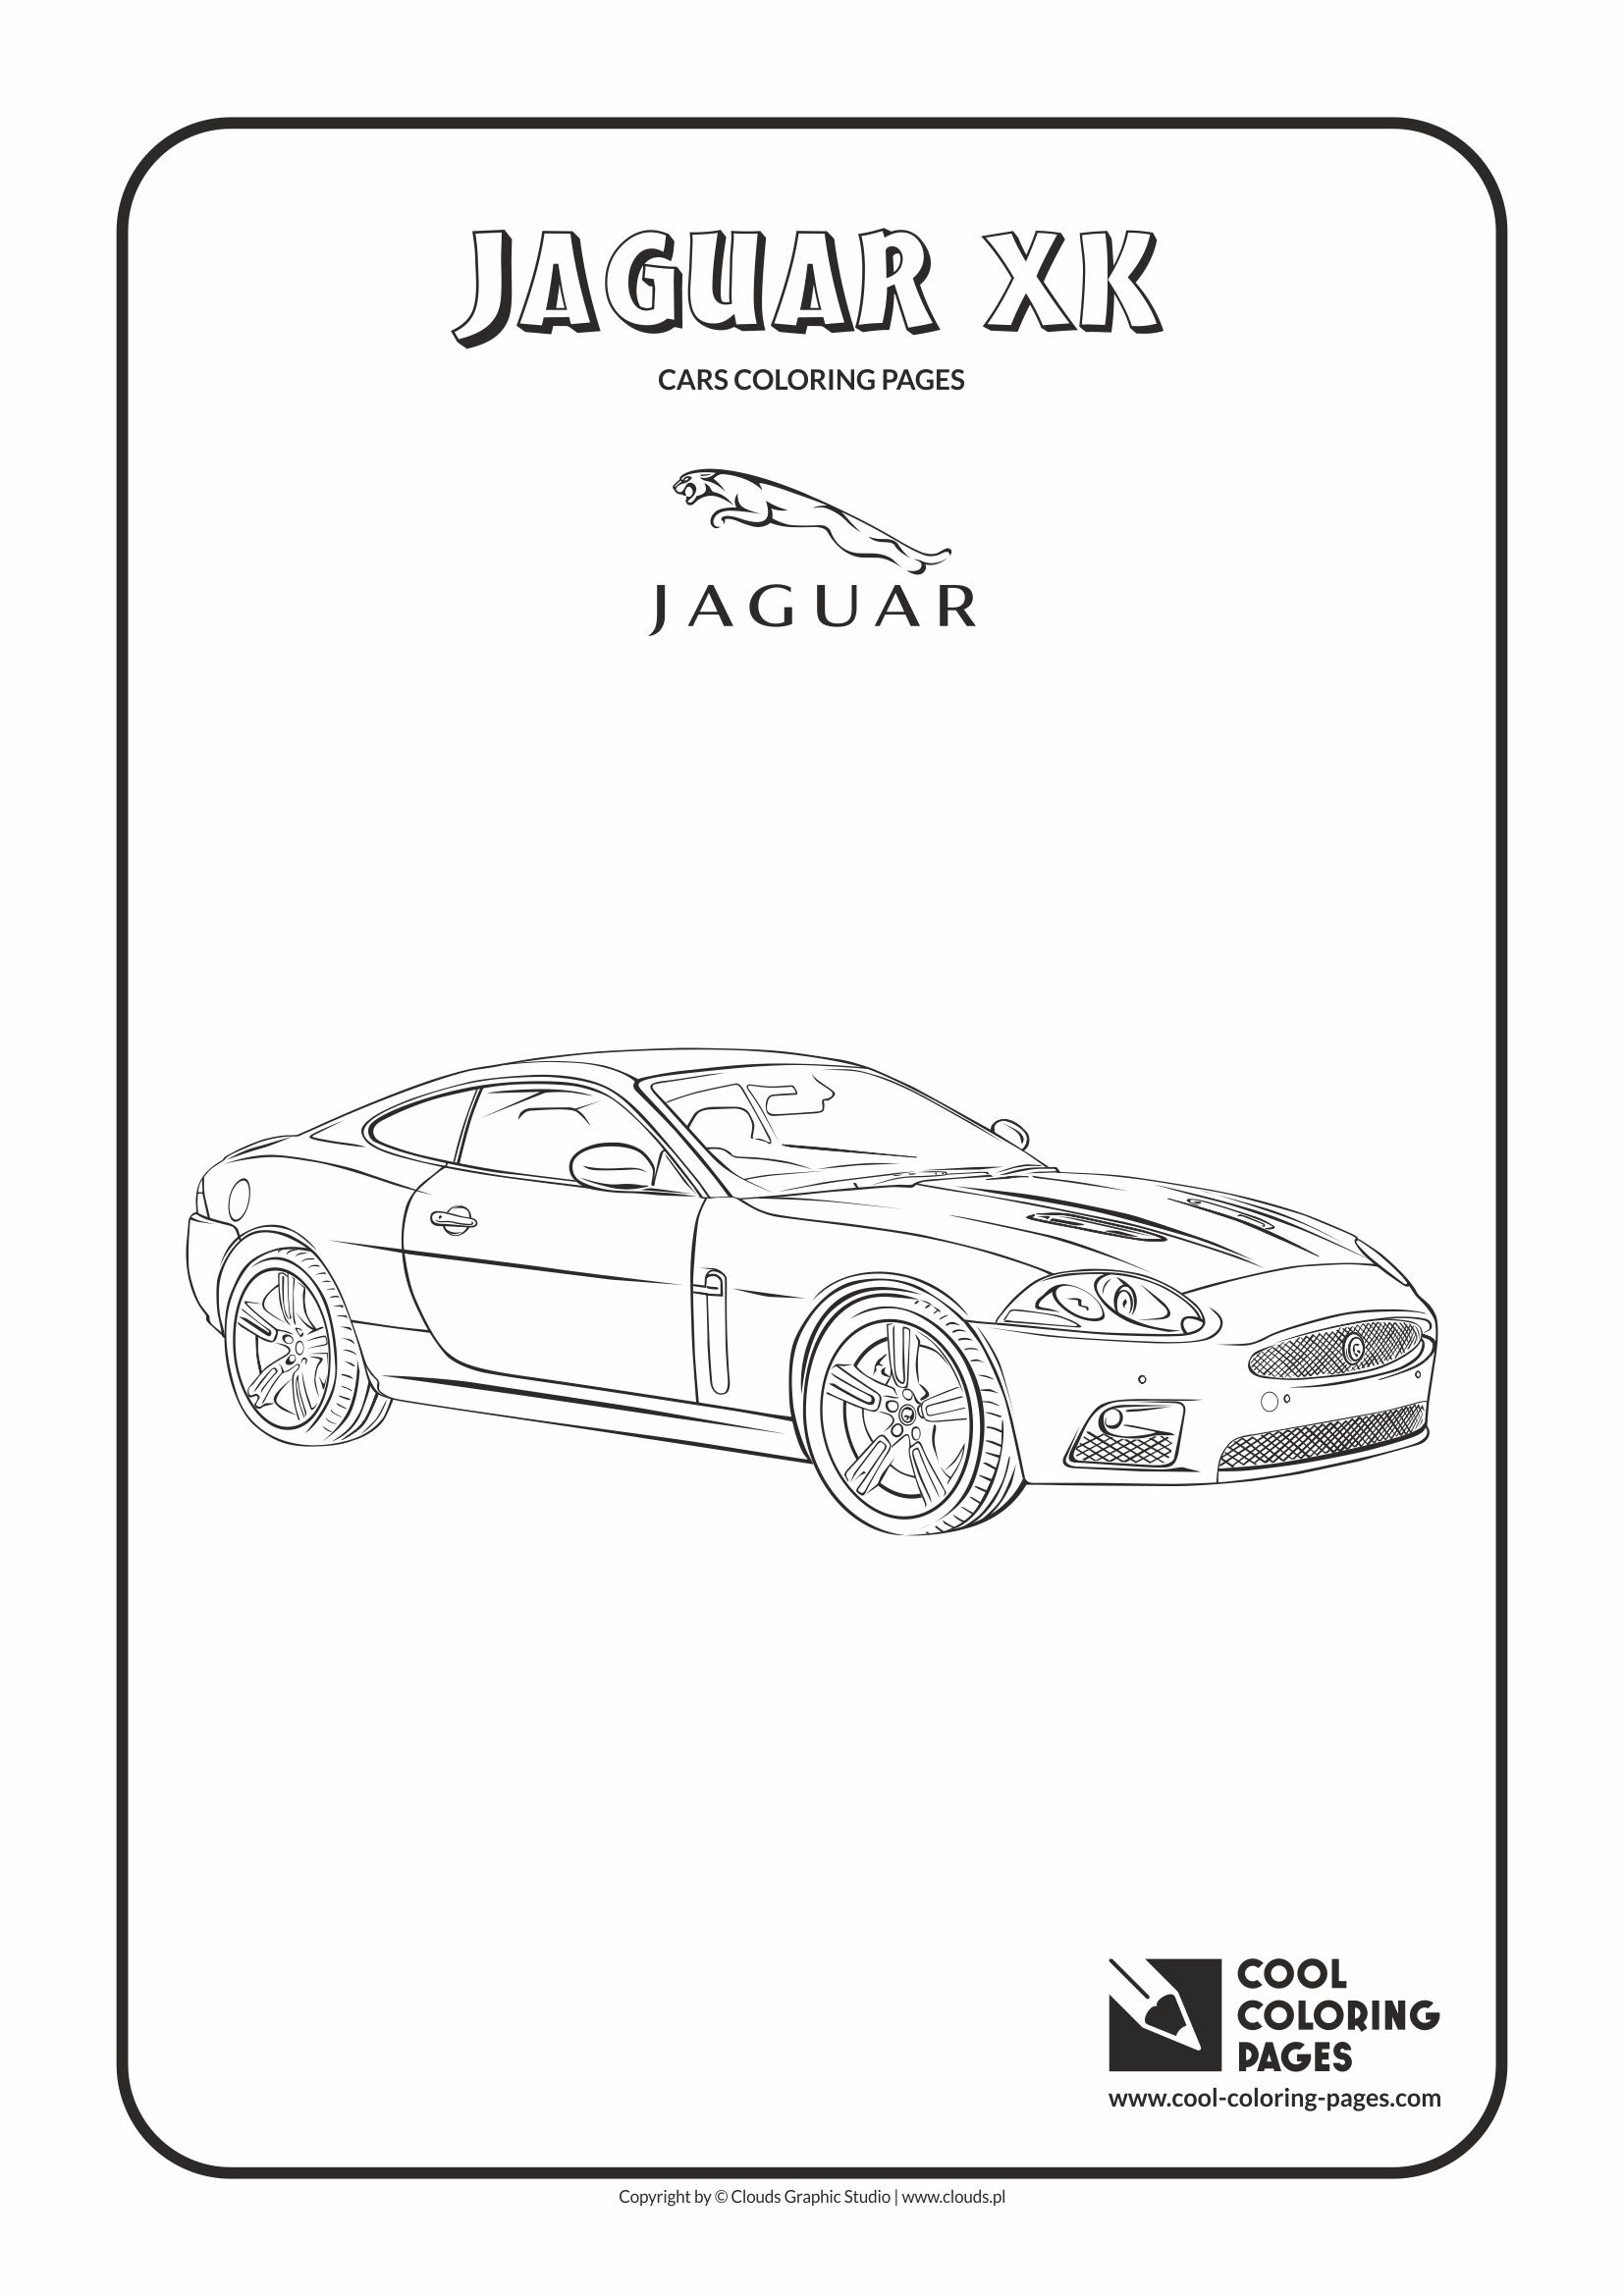 Cool Coloring Pages - Vehicles / Jaguar XK / Coloring page with Jaguar XK